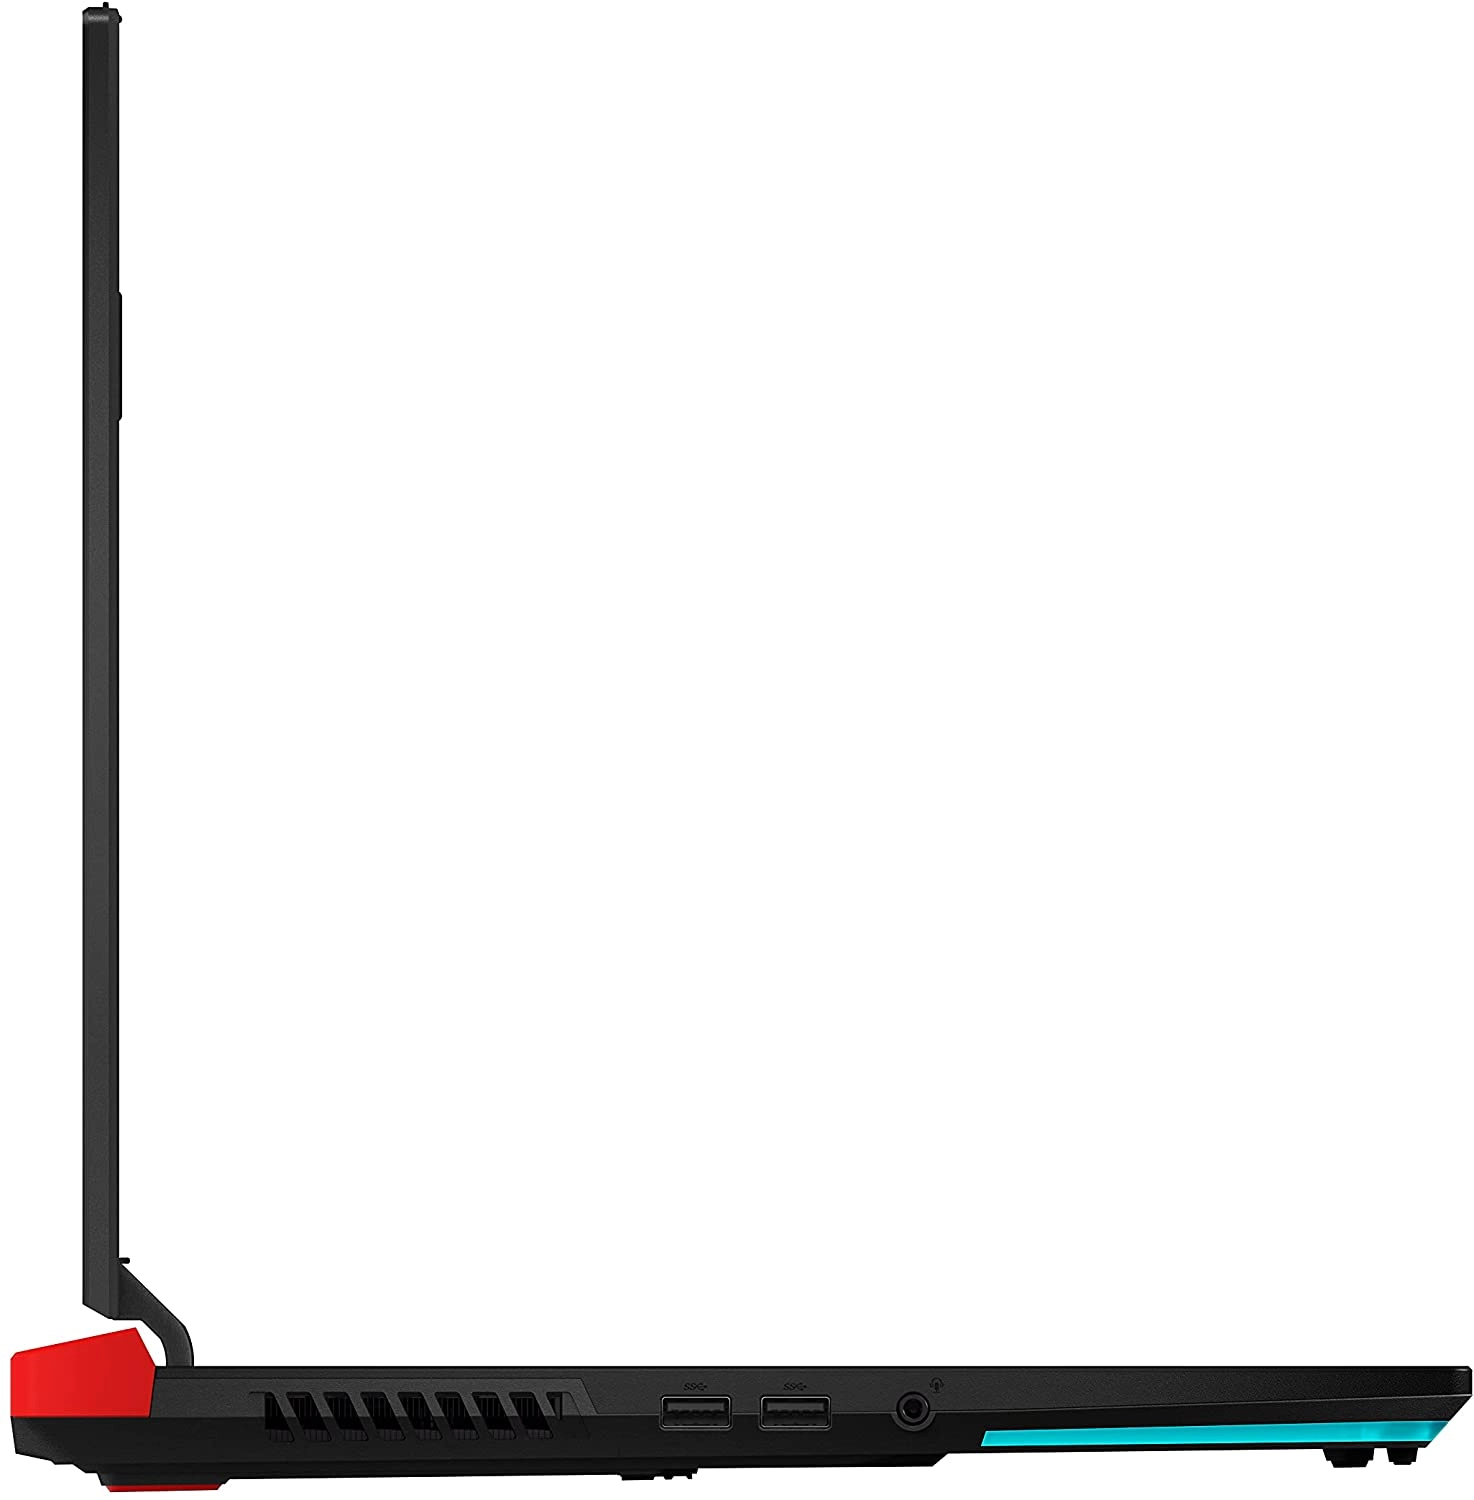 Asus G713QM-HG023 laptop image